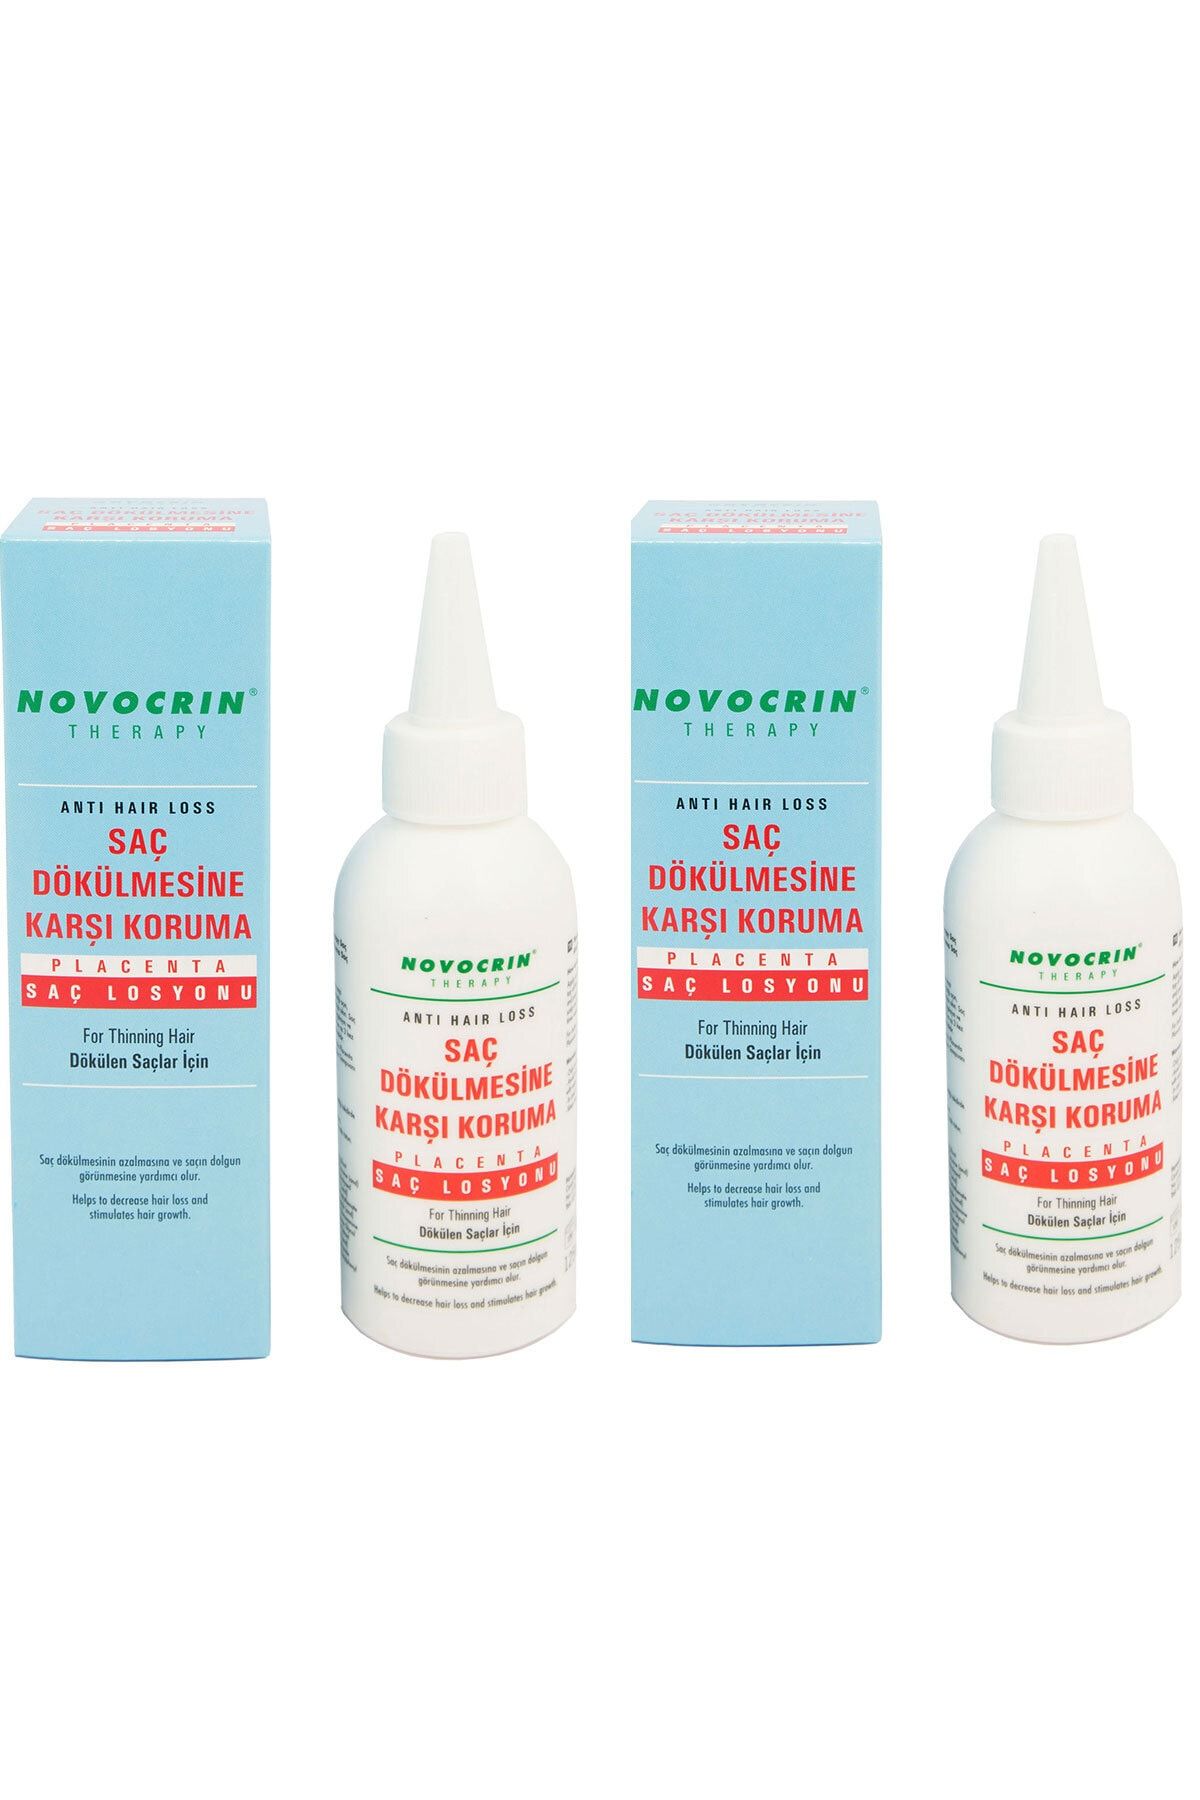 Novocrin Placenta Dökülen Saçlar Için Bakım Losyonu 125 Ml -2 Adet Paket